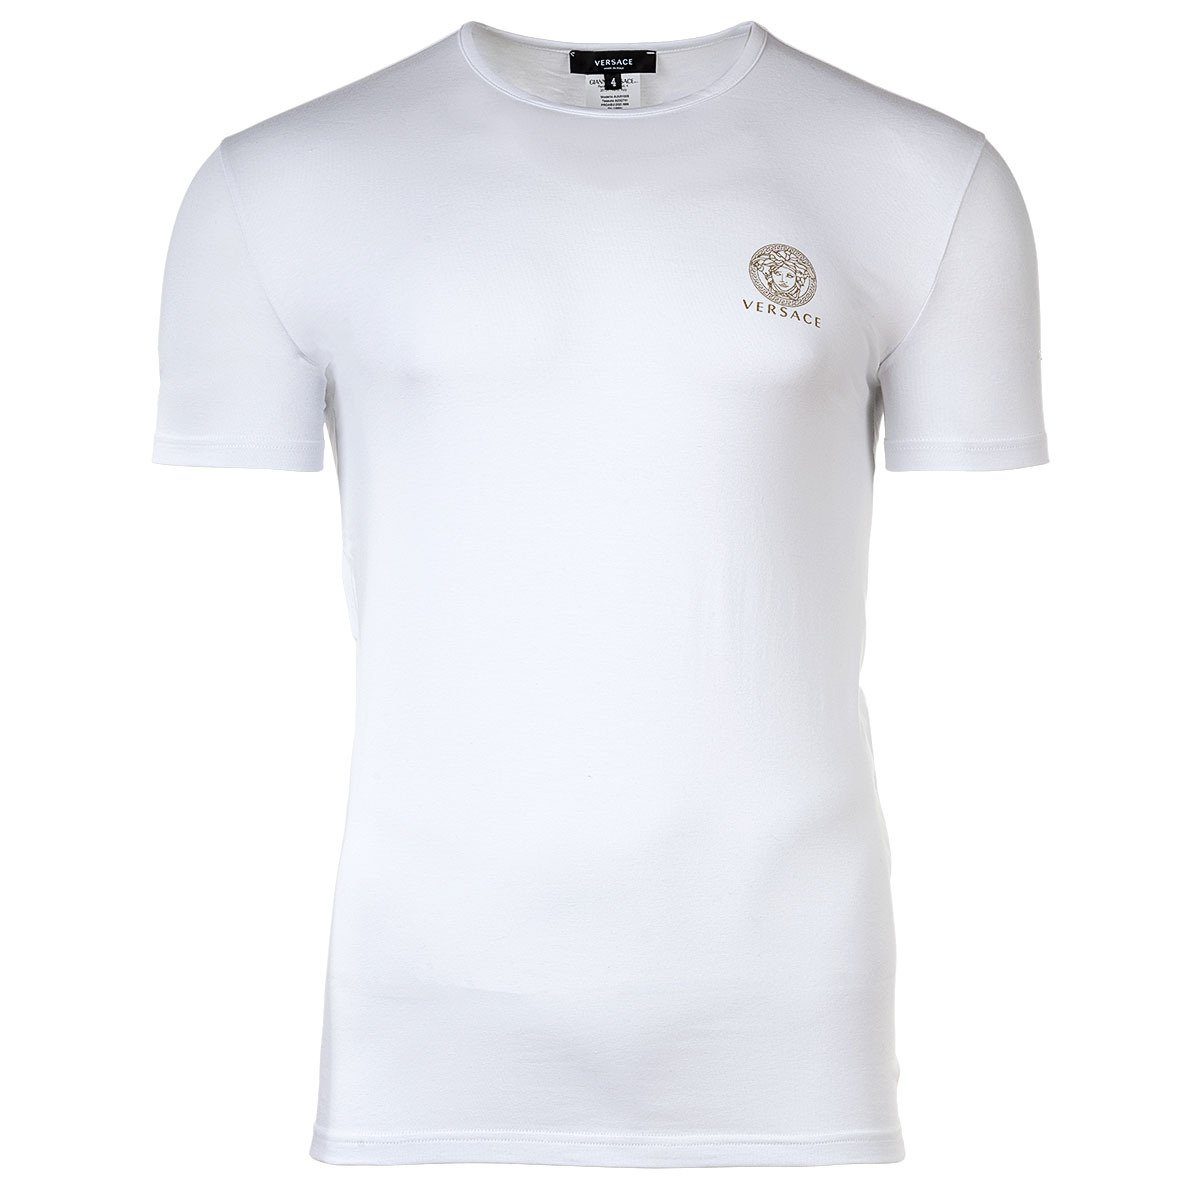 Versace T-Shirt Herren T-Shirt - Unterhemd, Rundhals, Stretch Weiß